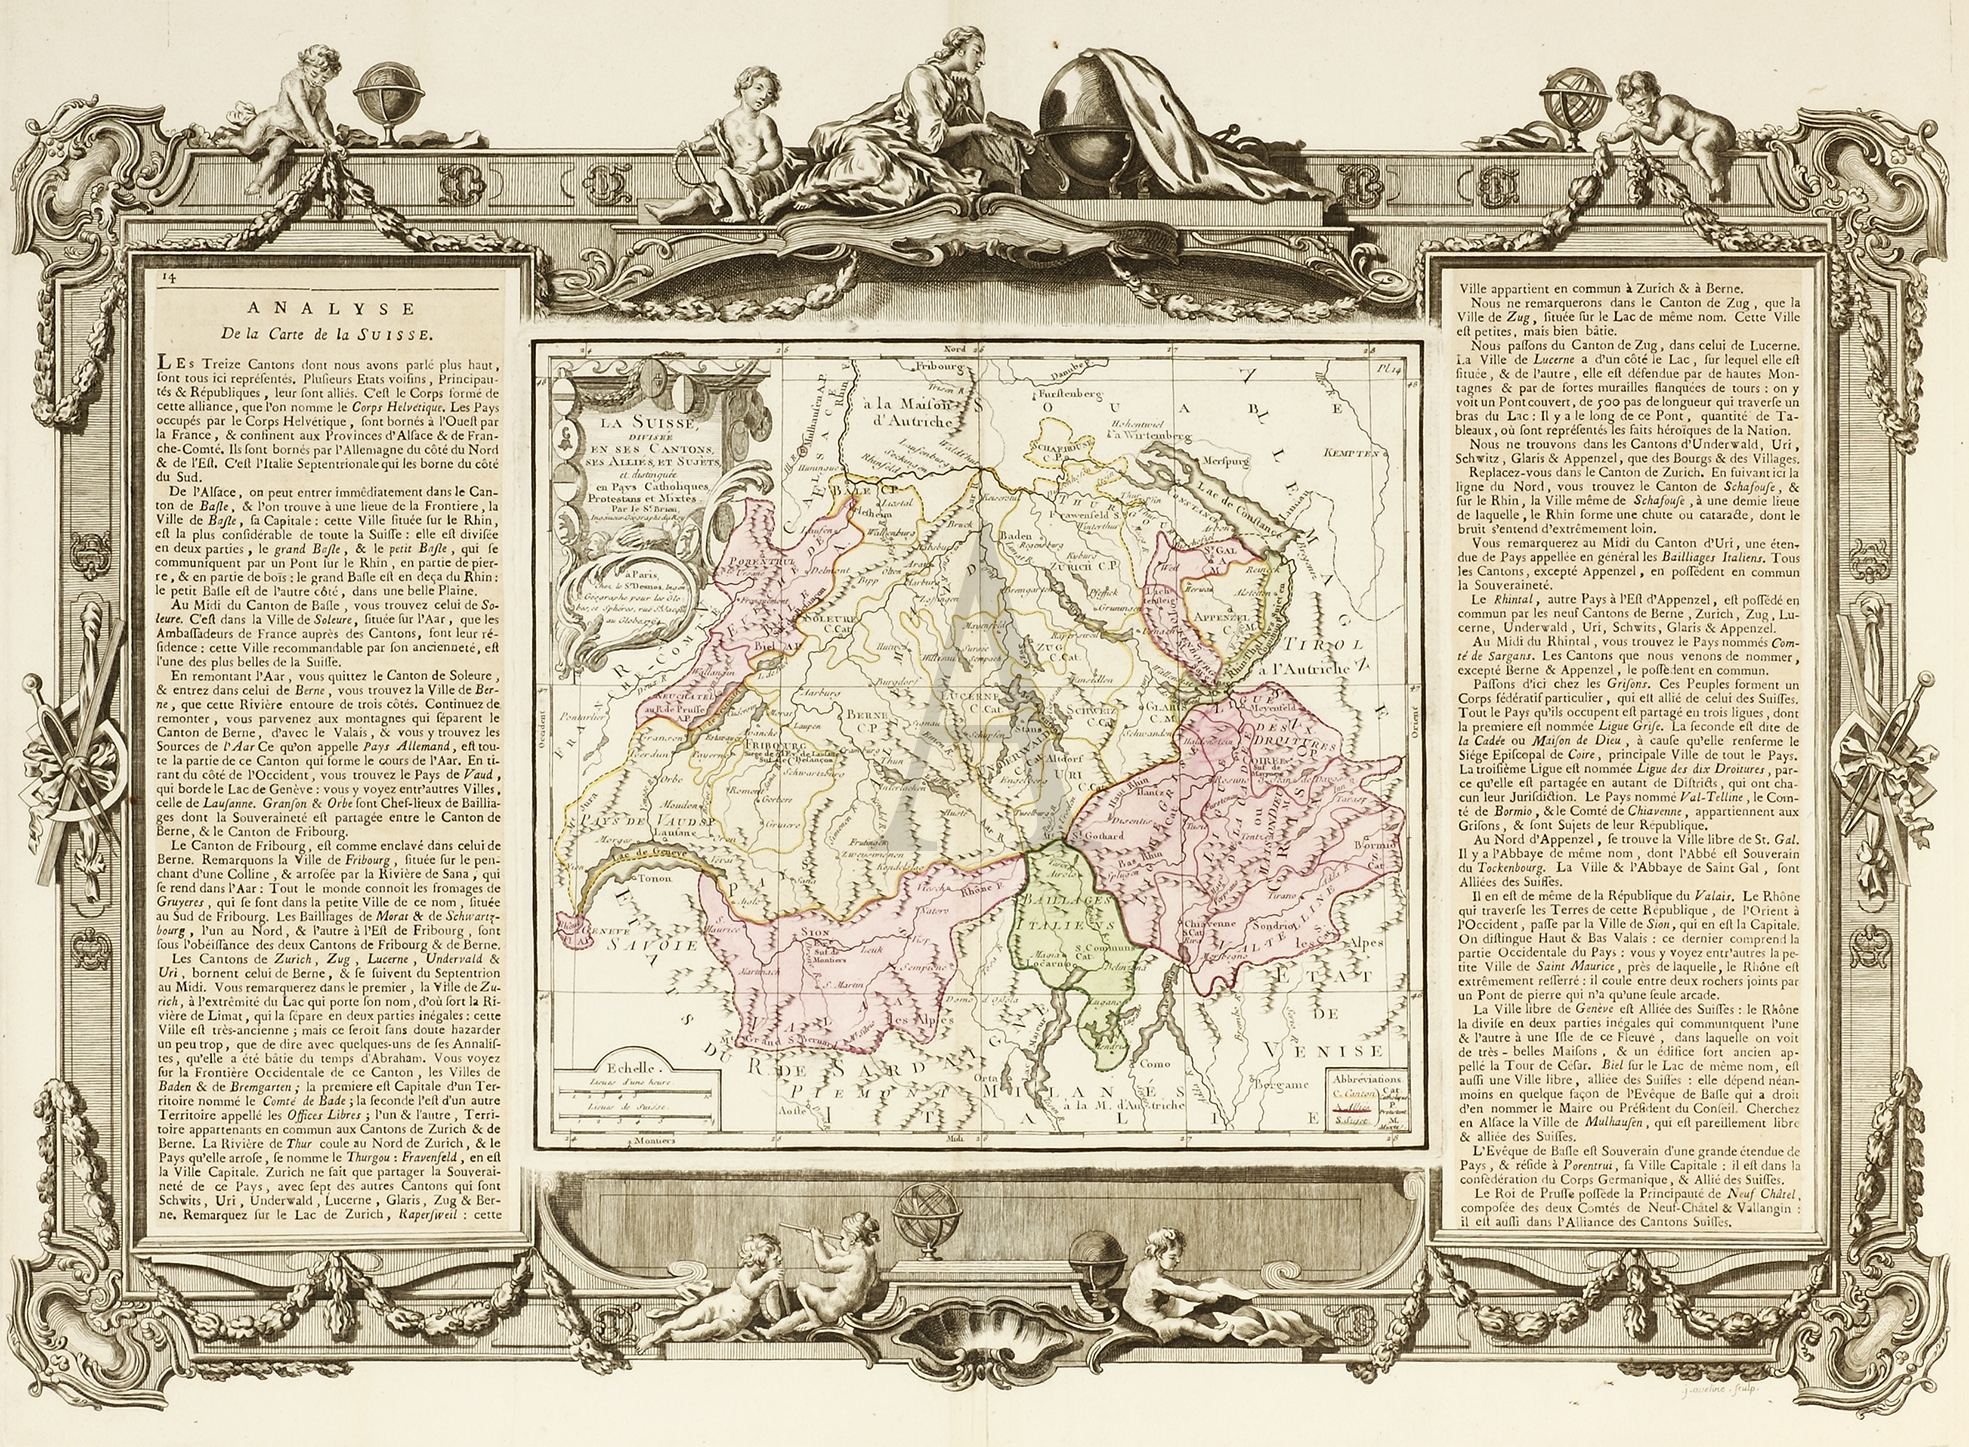 La Suisse, divisee en ses Cantons, ses Allies, et Sujets - Antique Print from 1766